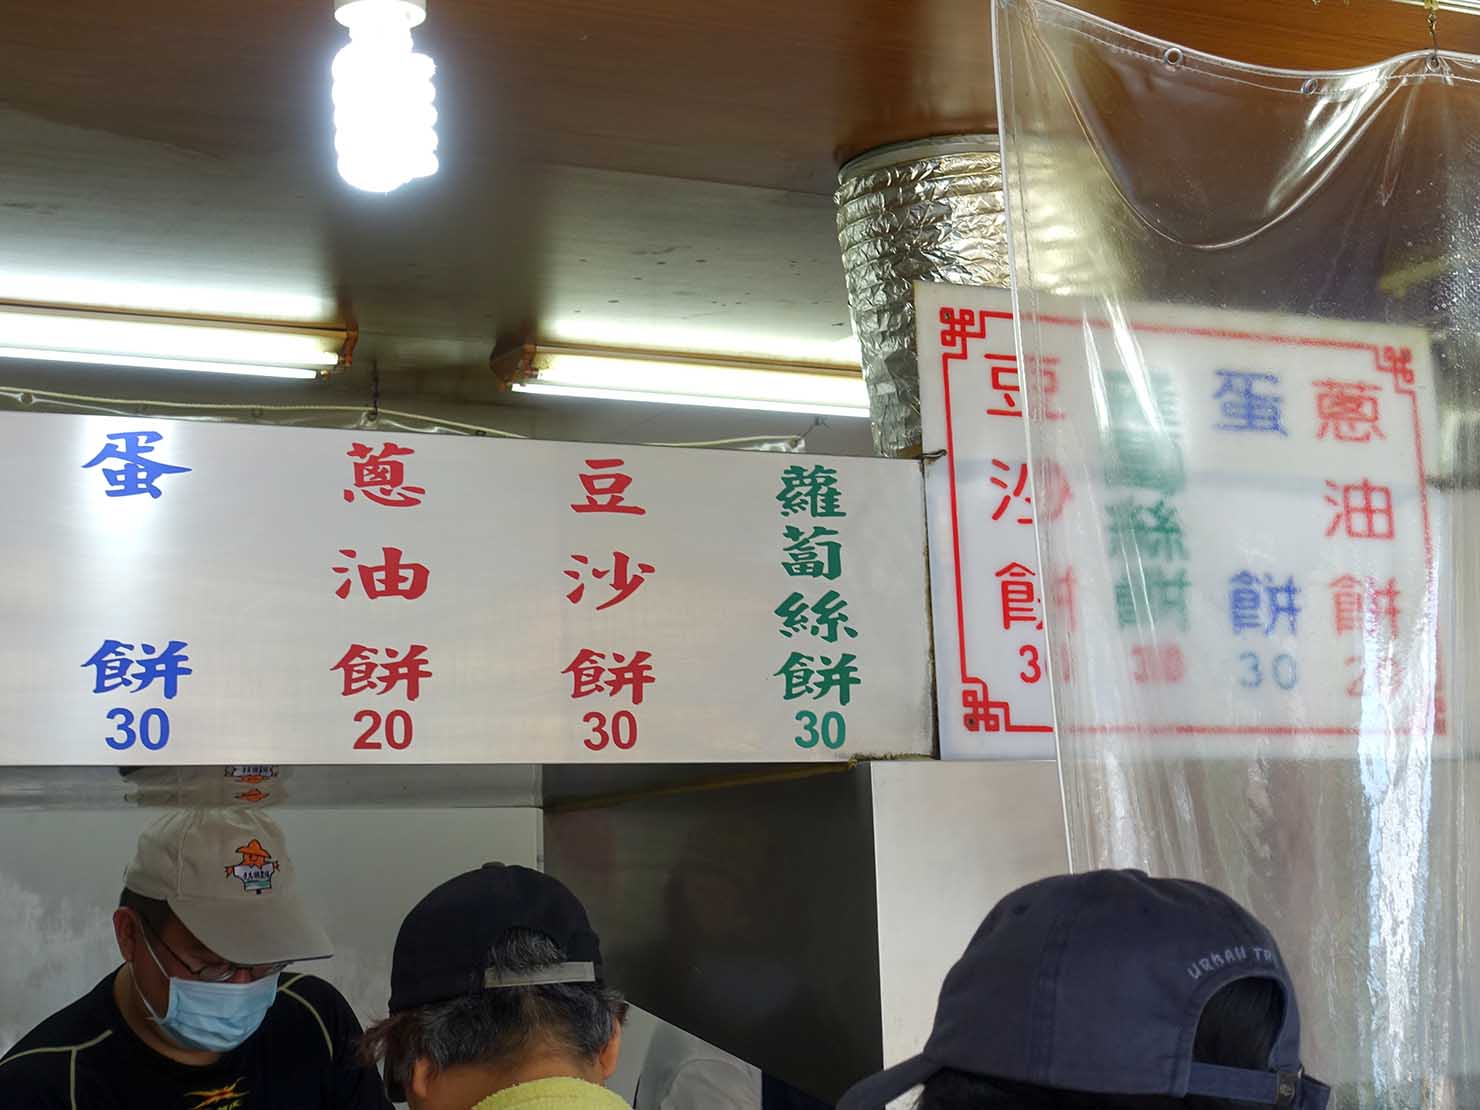 台北・師大夜市のおすすめ台湾グルメ店「溫州街蘿蔔絲餅達人」のメニュー